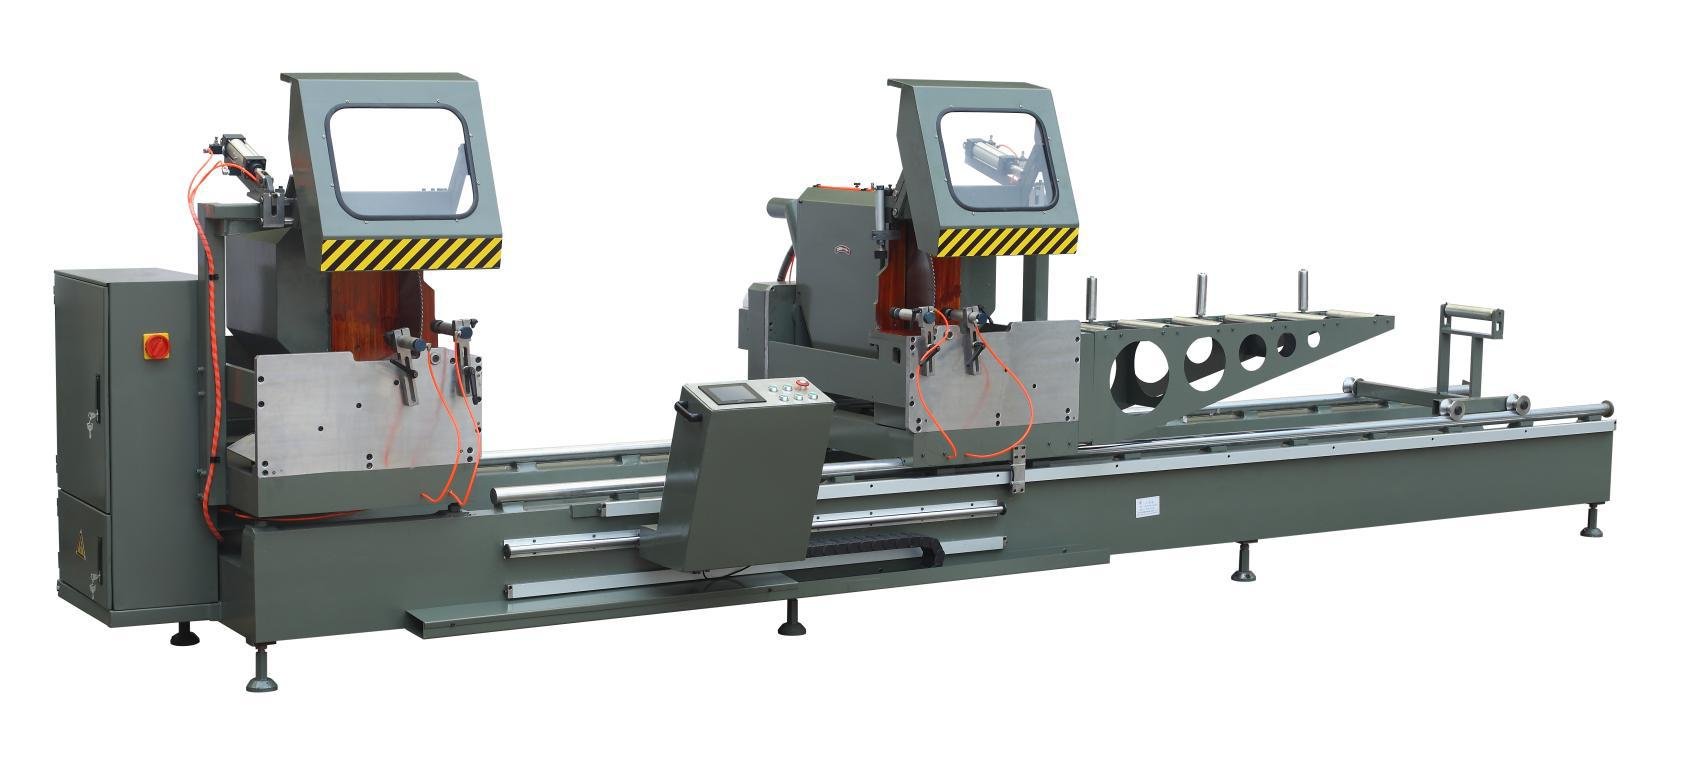 kingtool aluminium machinery Array image430